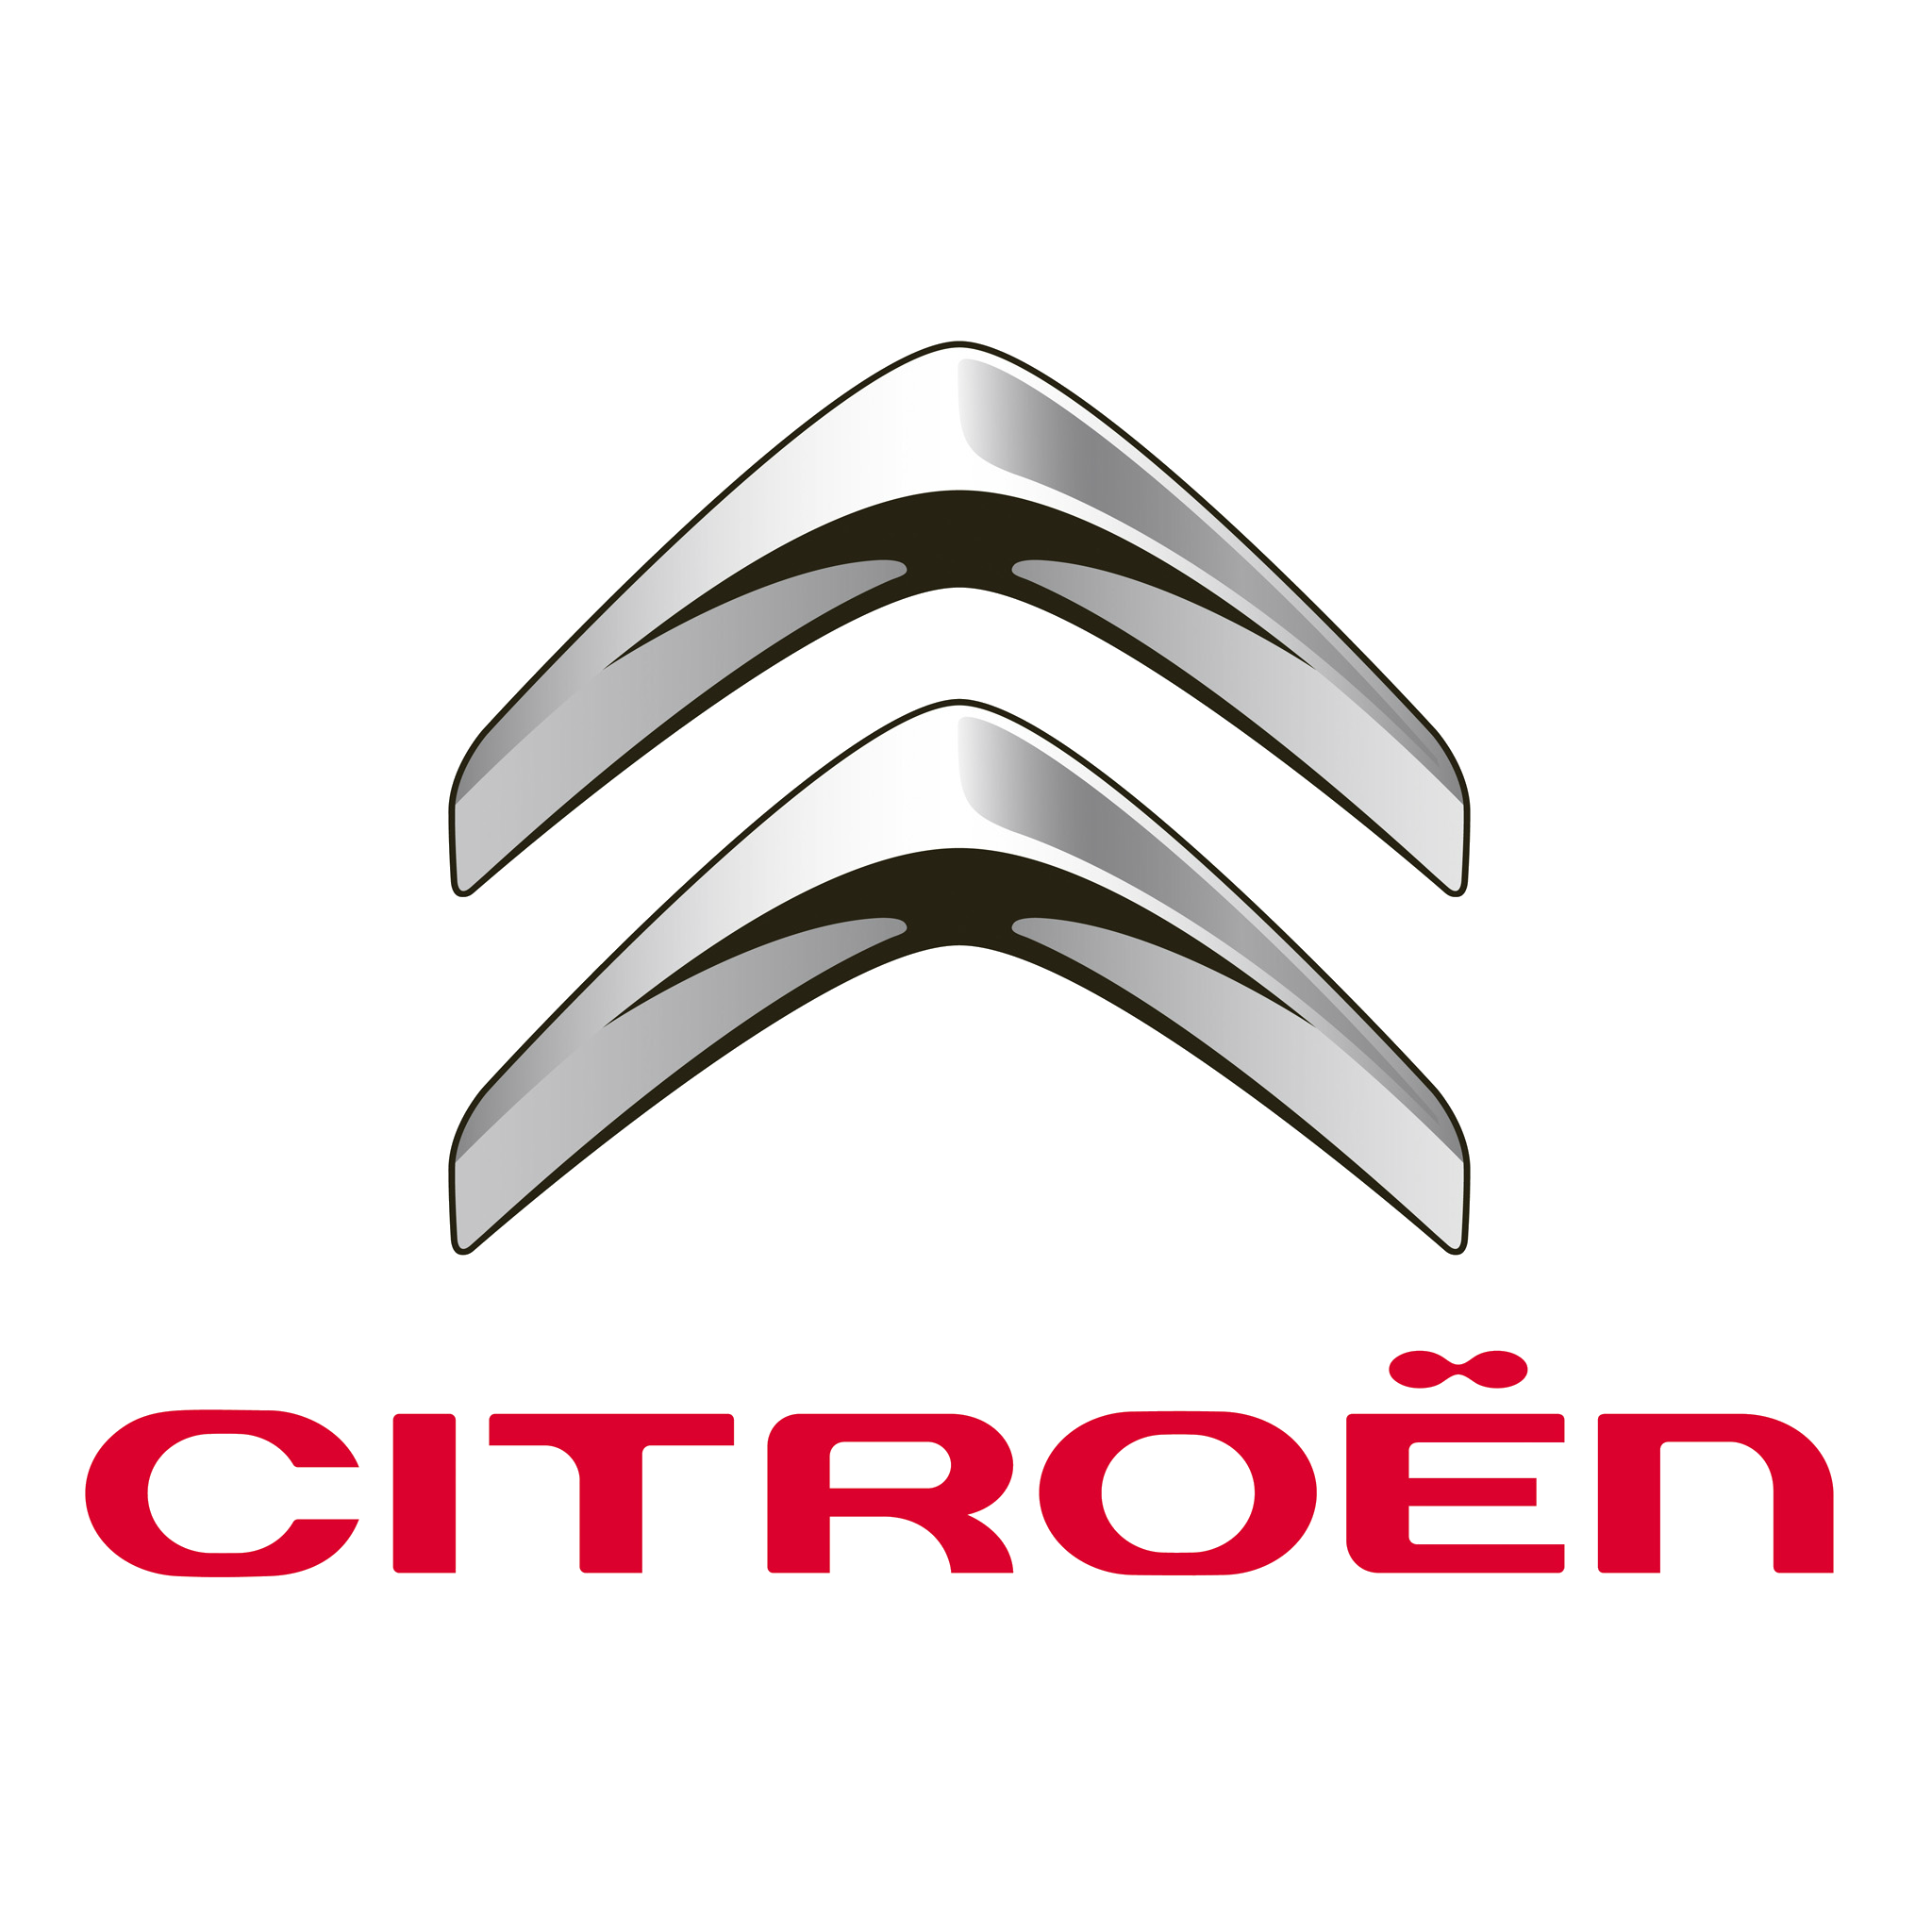 Citroen logo PNG transparent image download, size: 1176x1054px